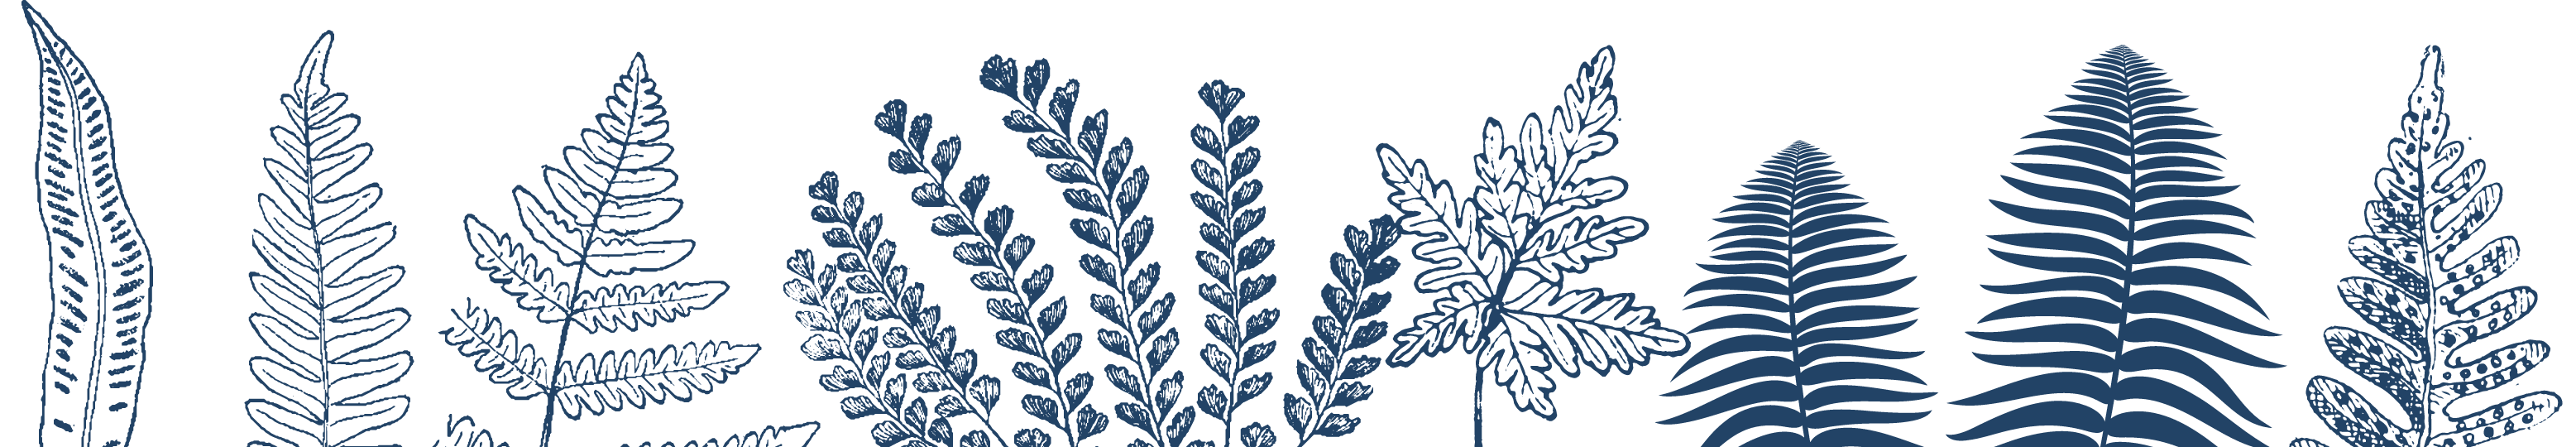 Illustration of blue foliage